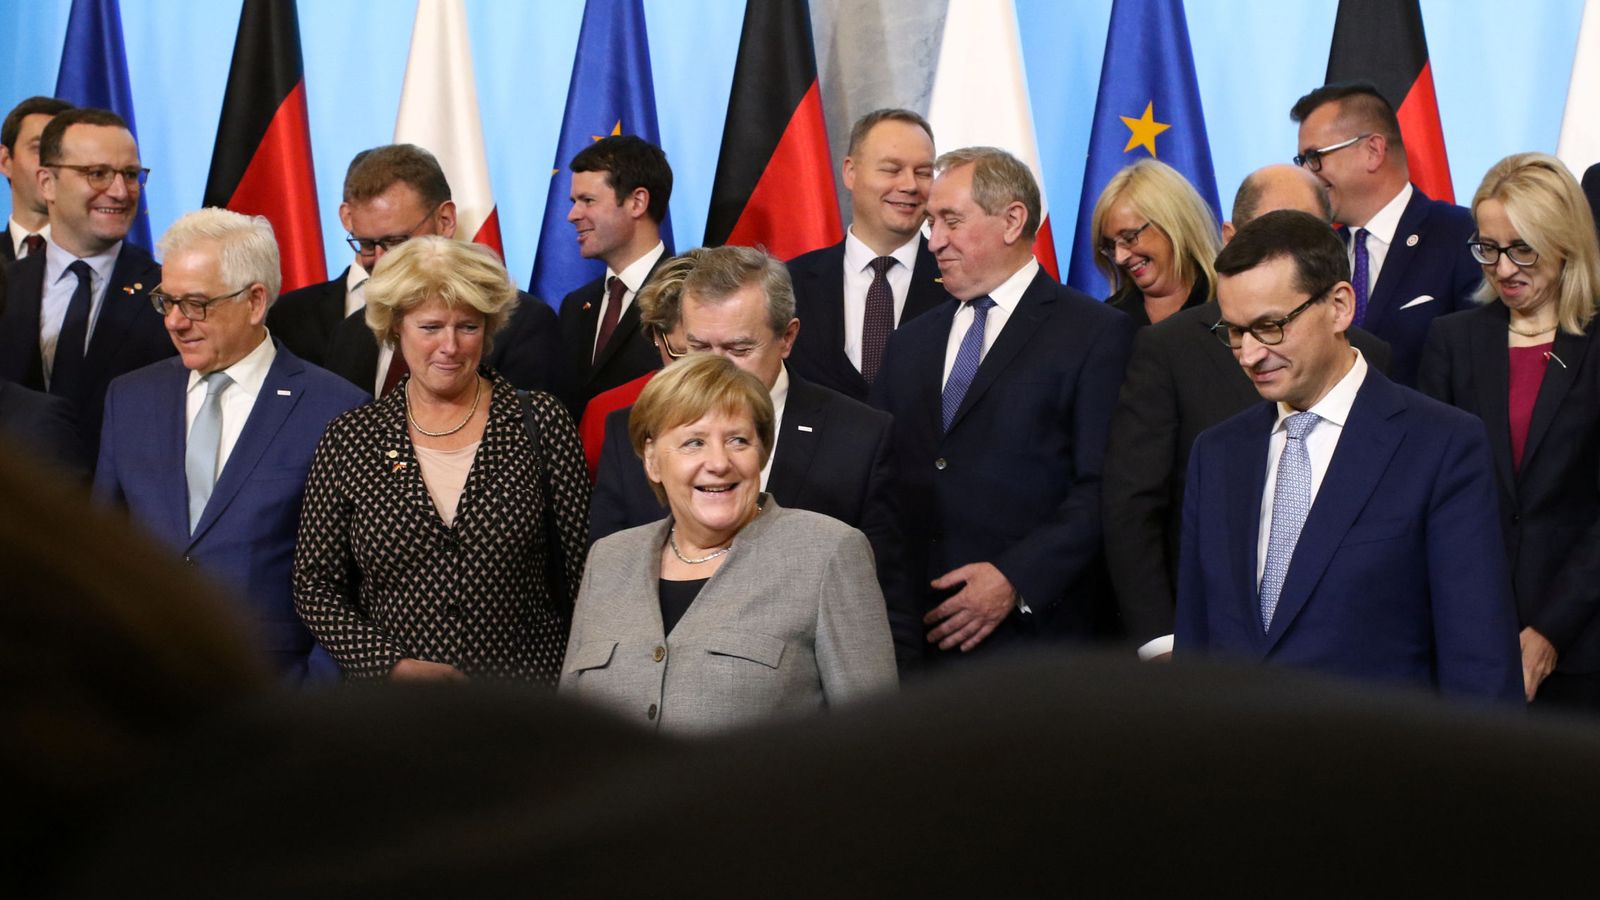 Foto: La canciller alemana Angela Merkel durante un encuentro con miembros del Gobierno polaco en Varsovia. (Reuters)